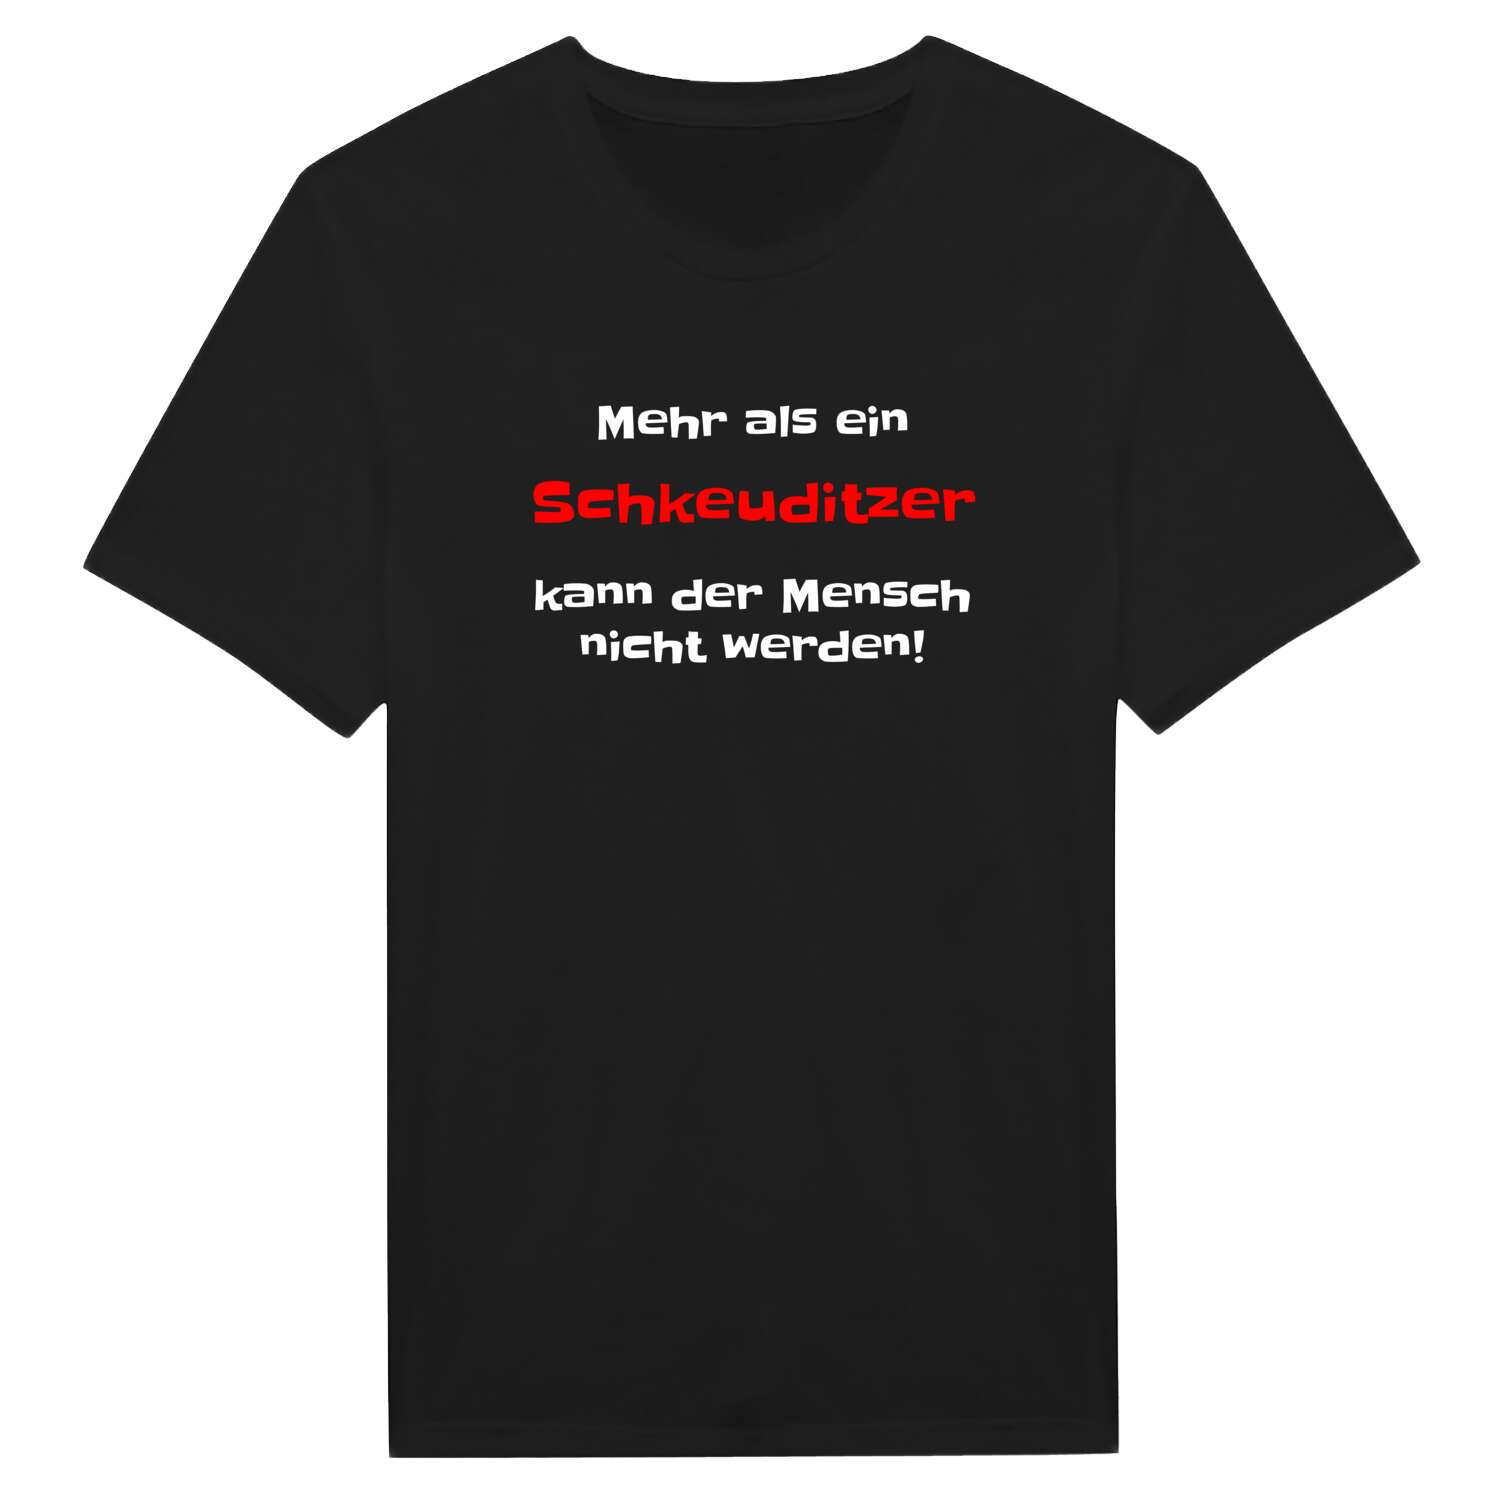 Schkeuditz T-Shirt »Mehr als ein«